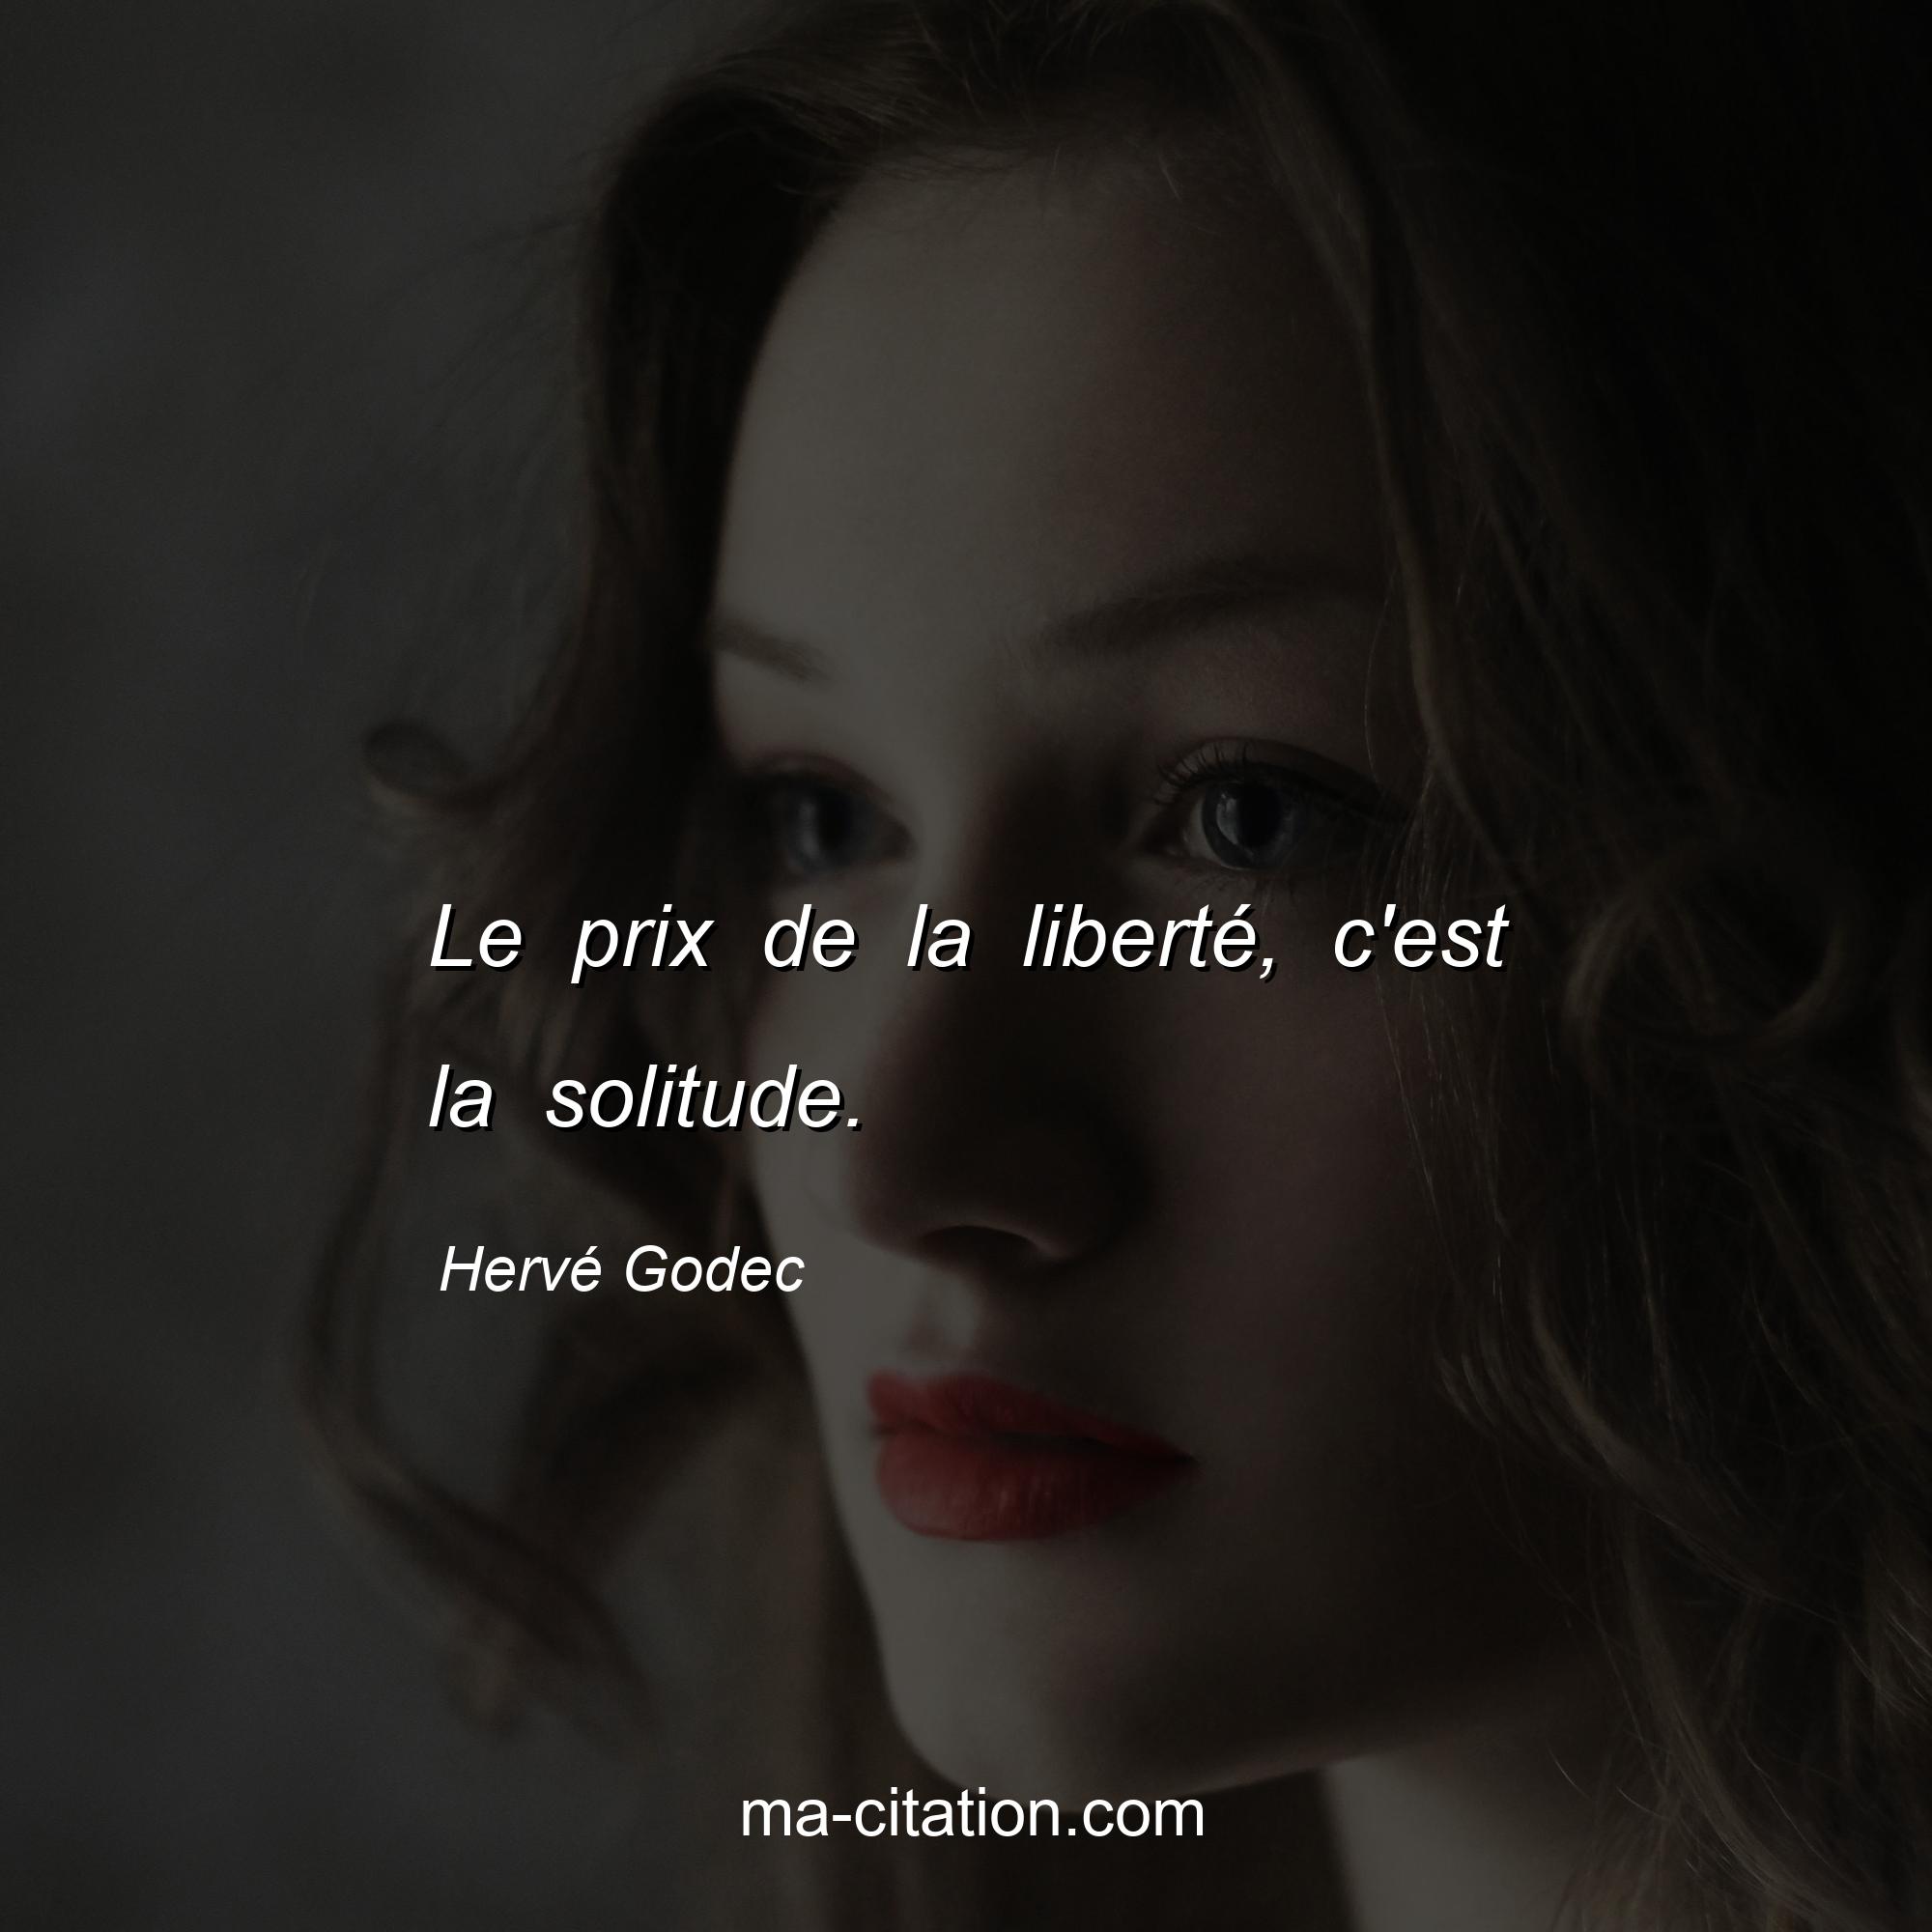 Hervé Godec : Le prix de la liberté, c'est la solitude.